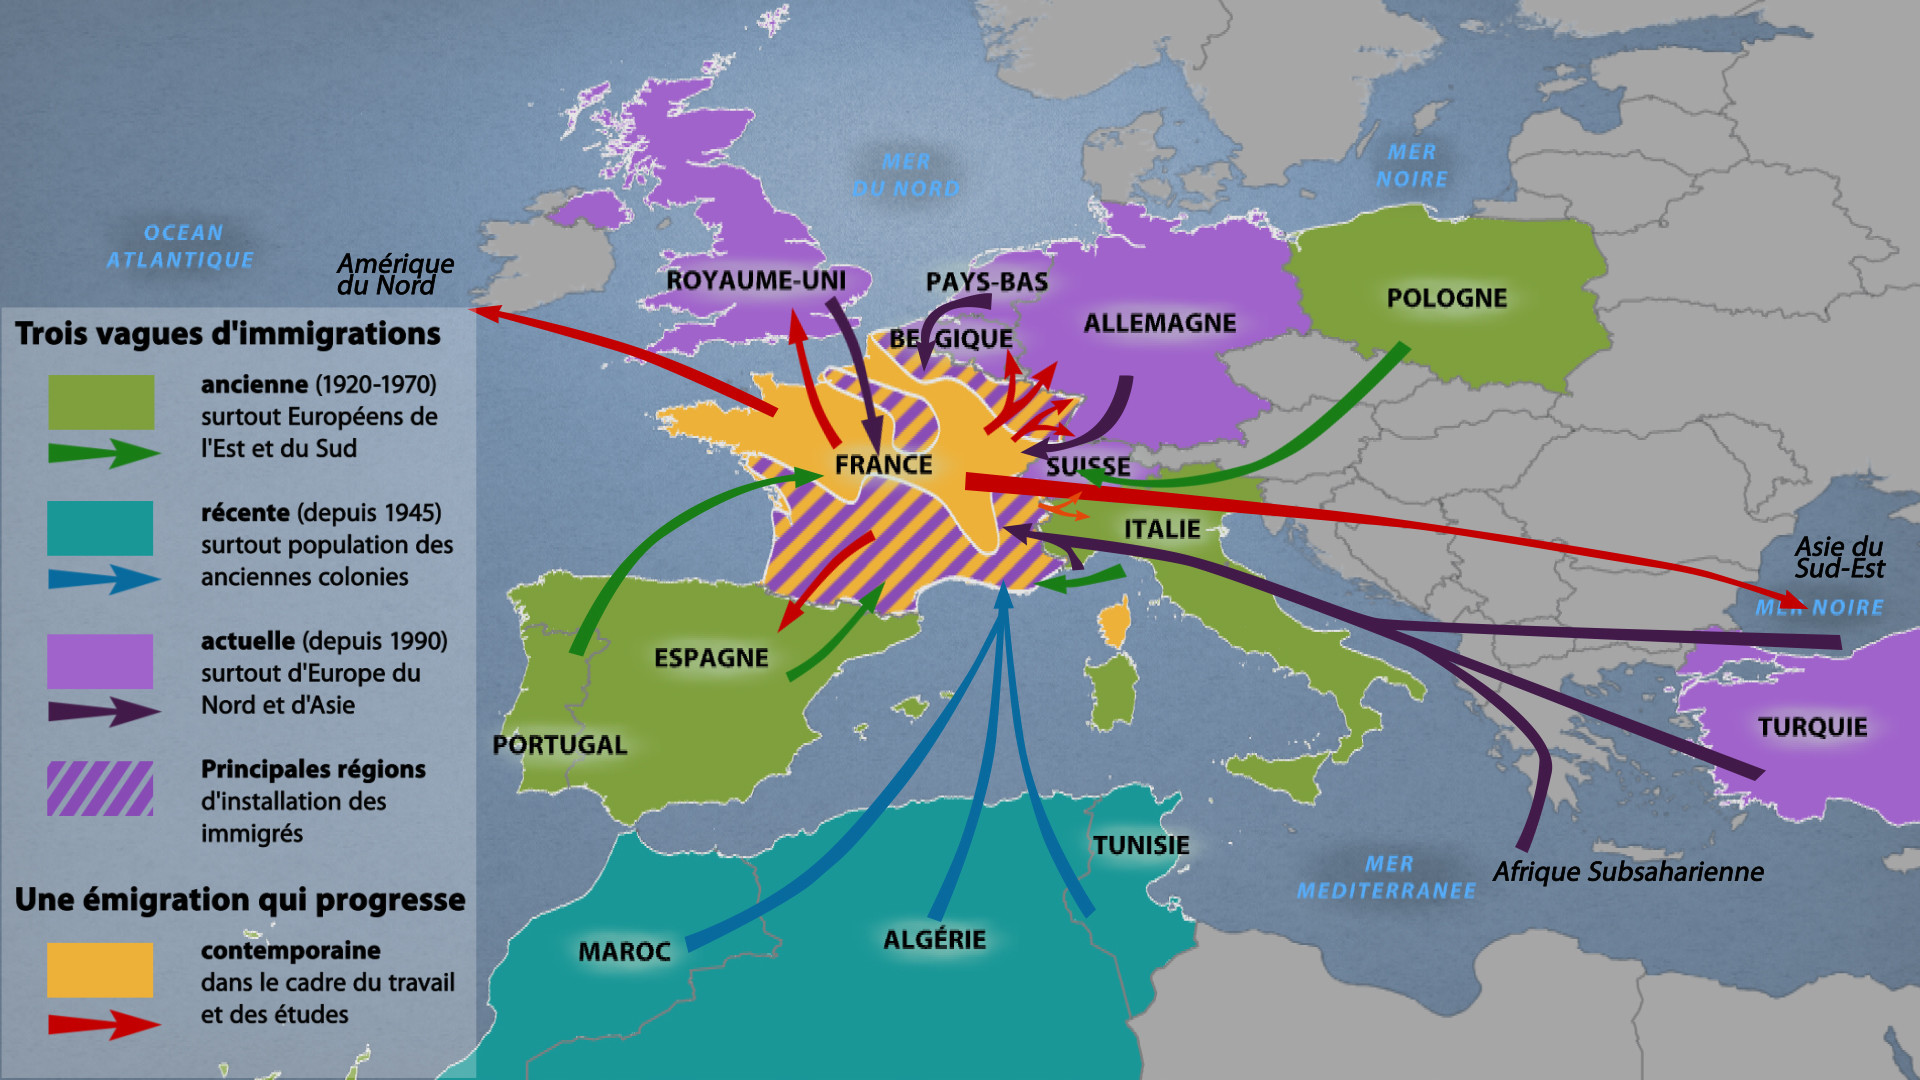 L'Europe, terre d'immigration depuis toujours?